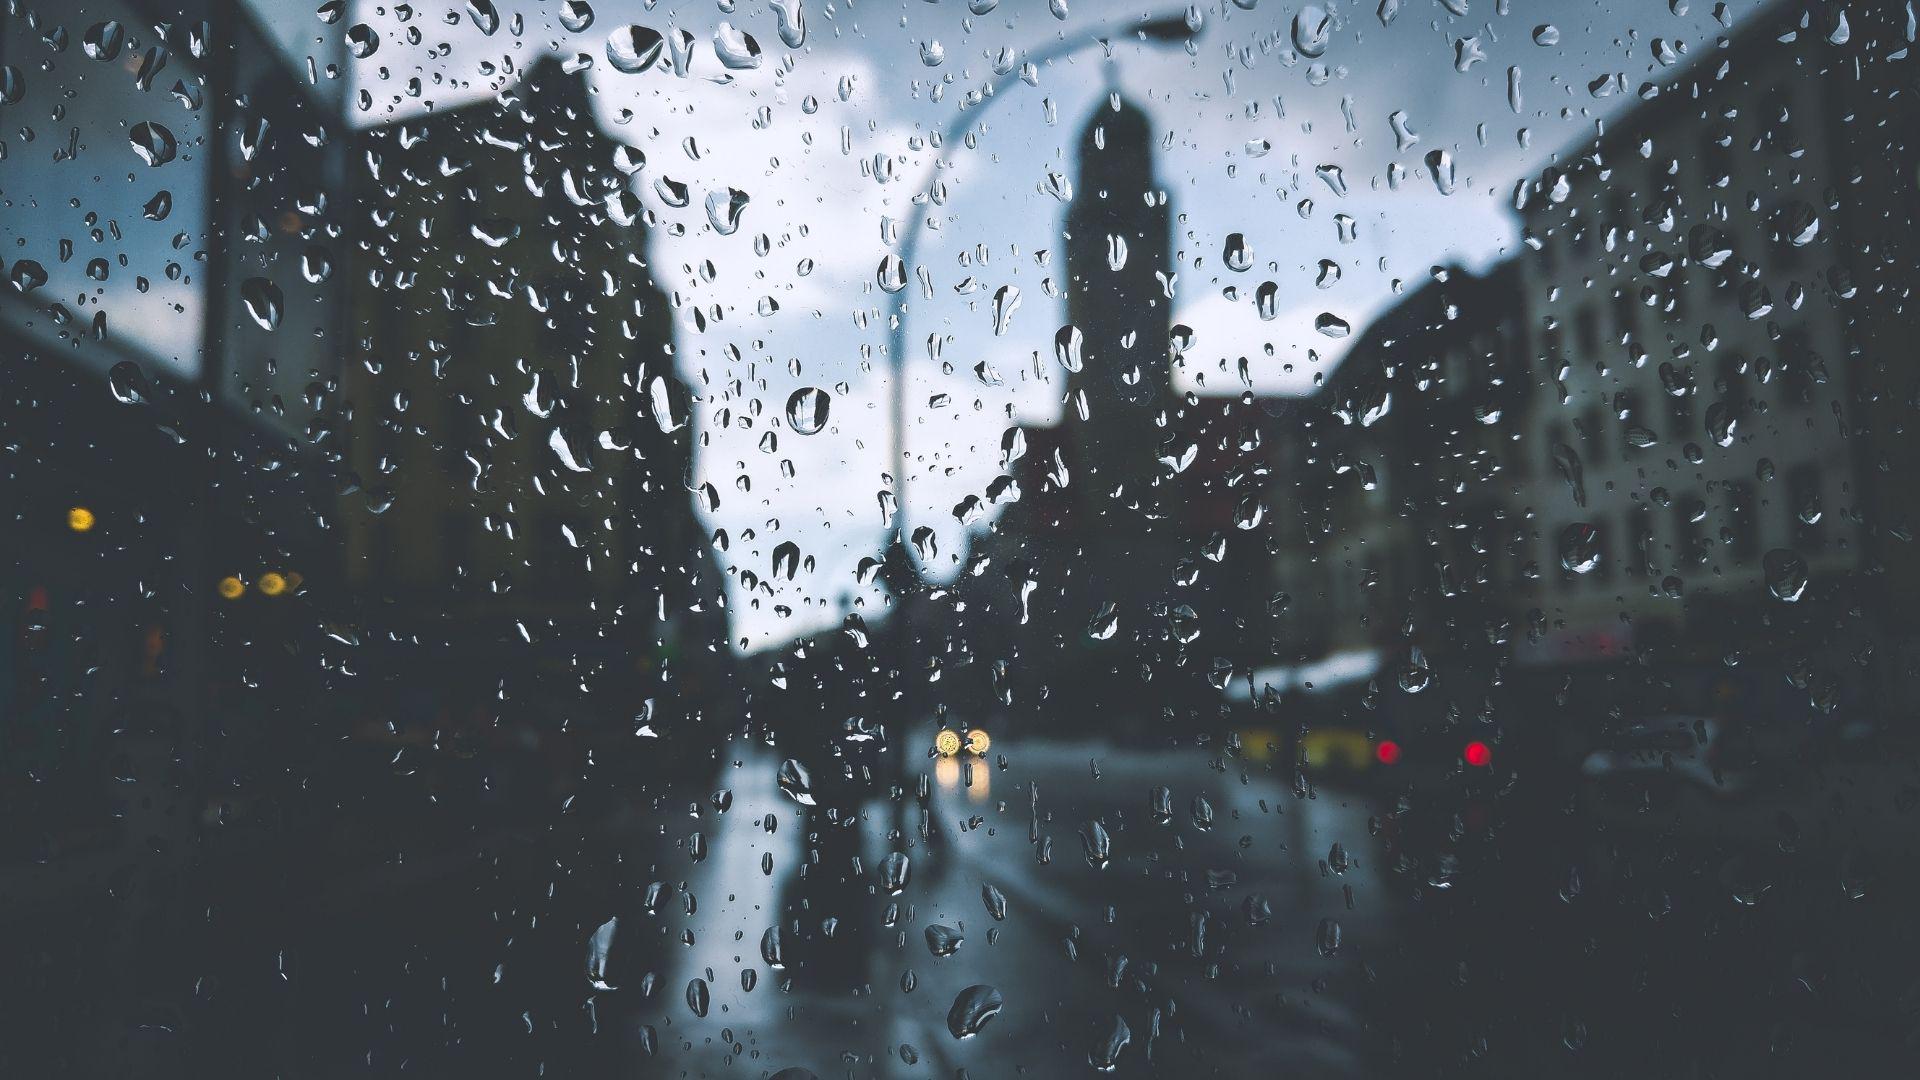 yağmurlu hava görseli, yağmur damlaları camda